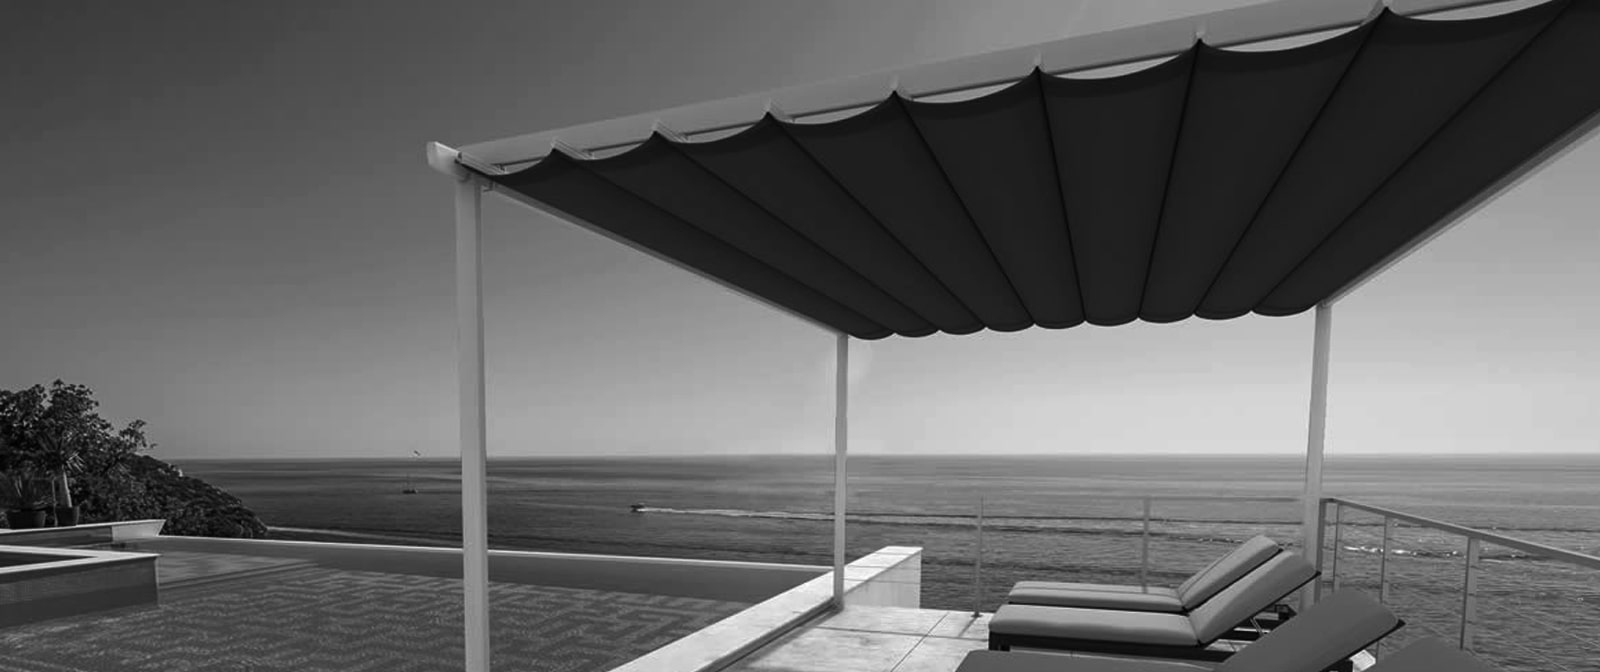 Palilleria Zen Marca Gaviota terraza frente mar>
<div class=